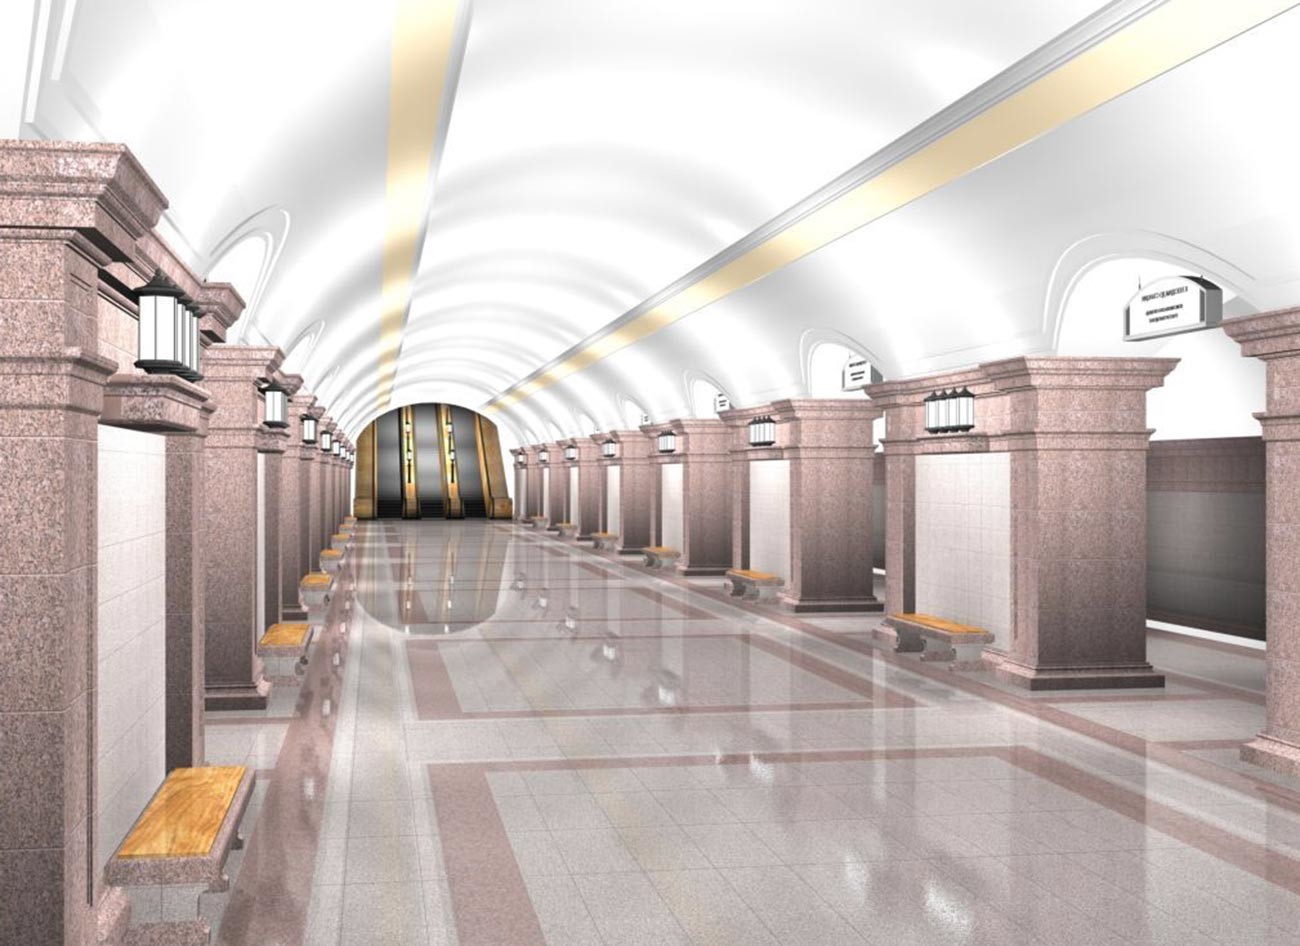 Станица метроа „Трг револуције“, Чељабинск, -  приказ платформе за путнике у главном холу.